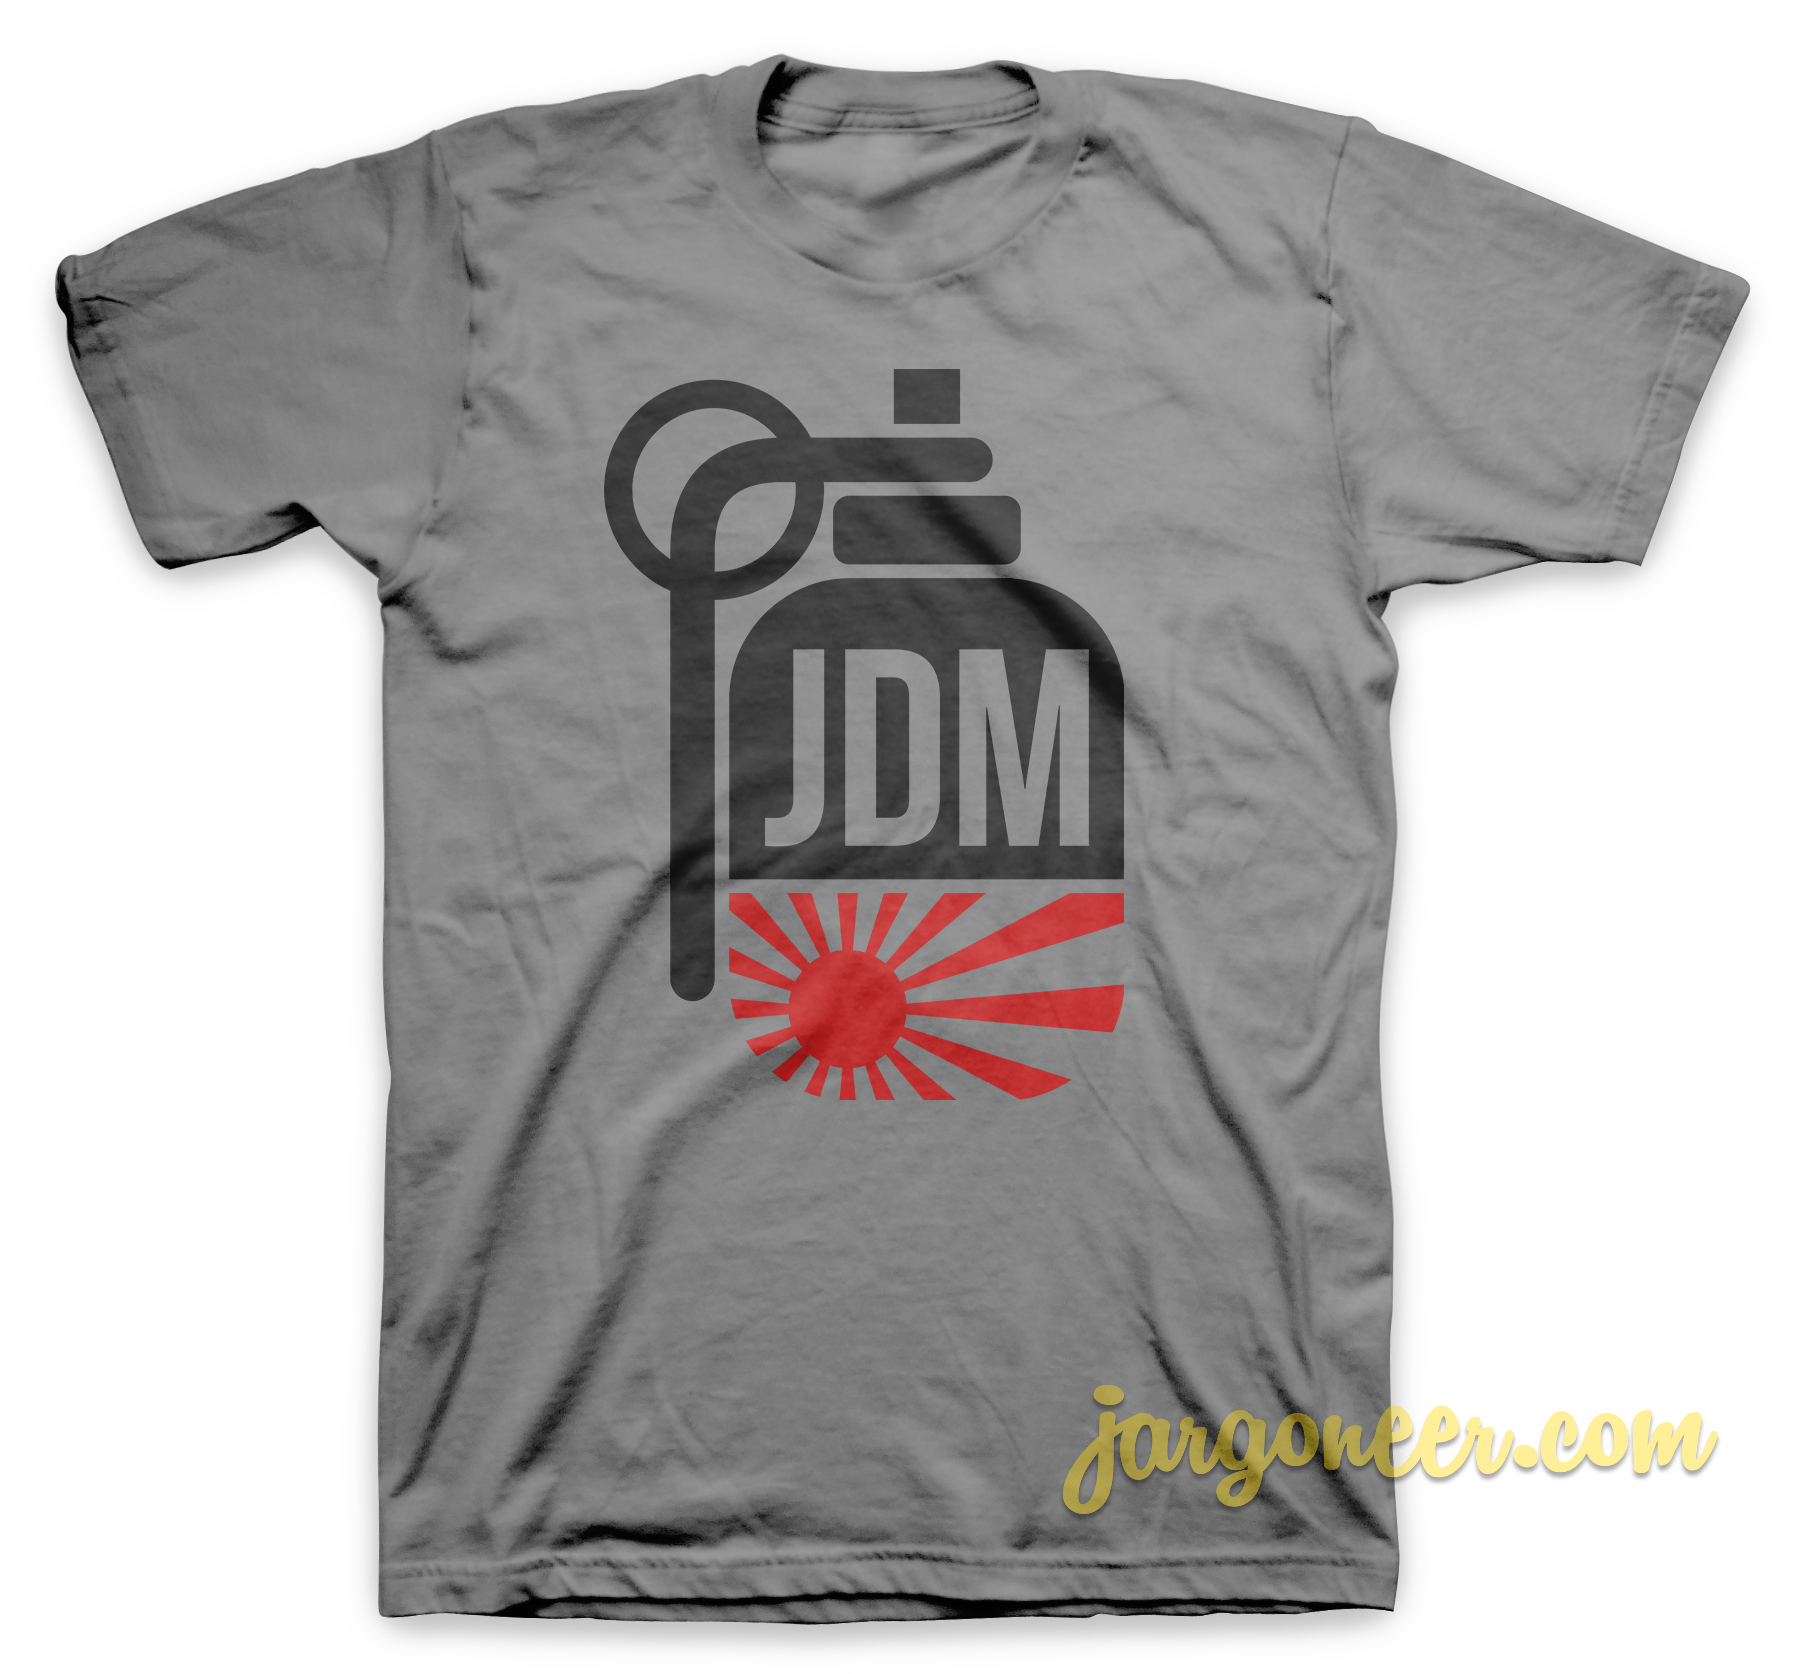 JDM Granadet Gray T Shirt - Shop Unique Graphic Cool Shirt Designs